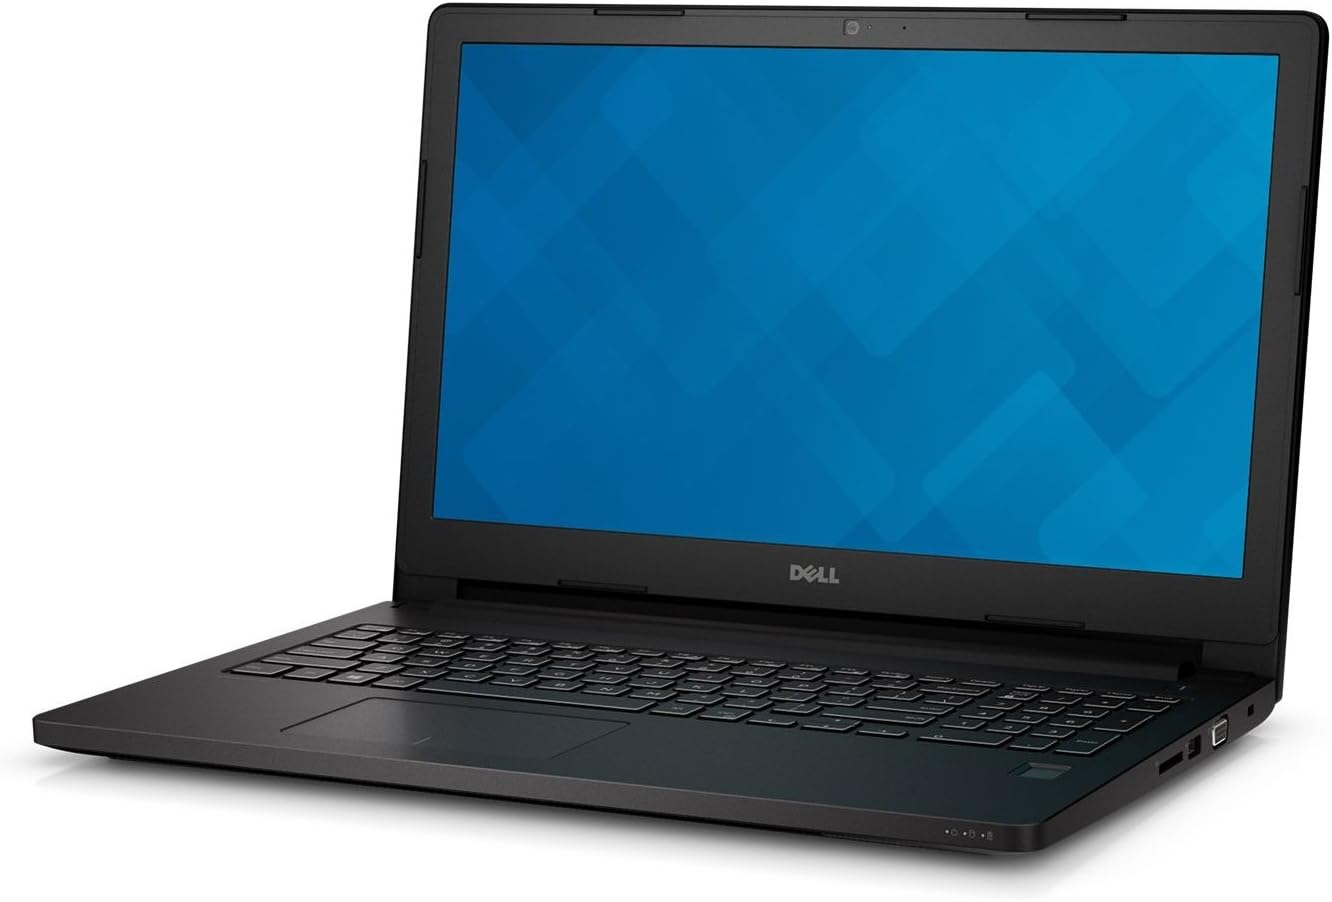 Dell Latitude 15 3000 3570 15.6" Notebook - Intel Core i7 (6th Gen) i5-6200U Dual-core (2 Core) 2.30 GHz 8GB DDR3L RAM 256 GB SSD, Windows 10 Pro